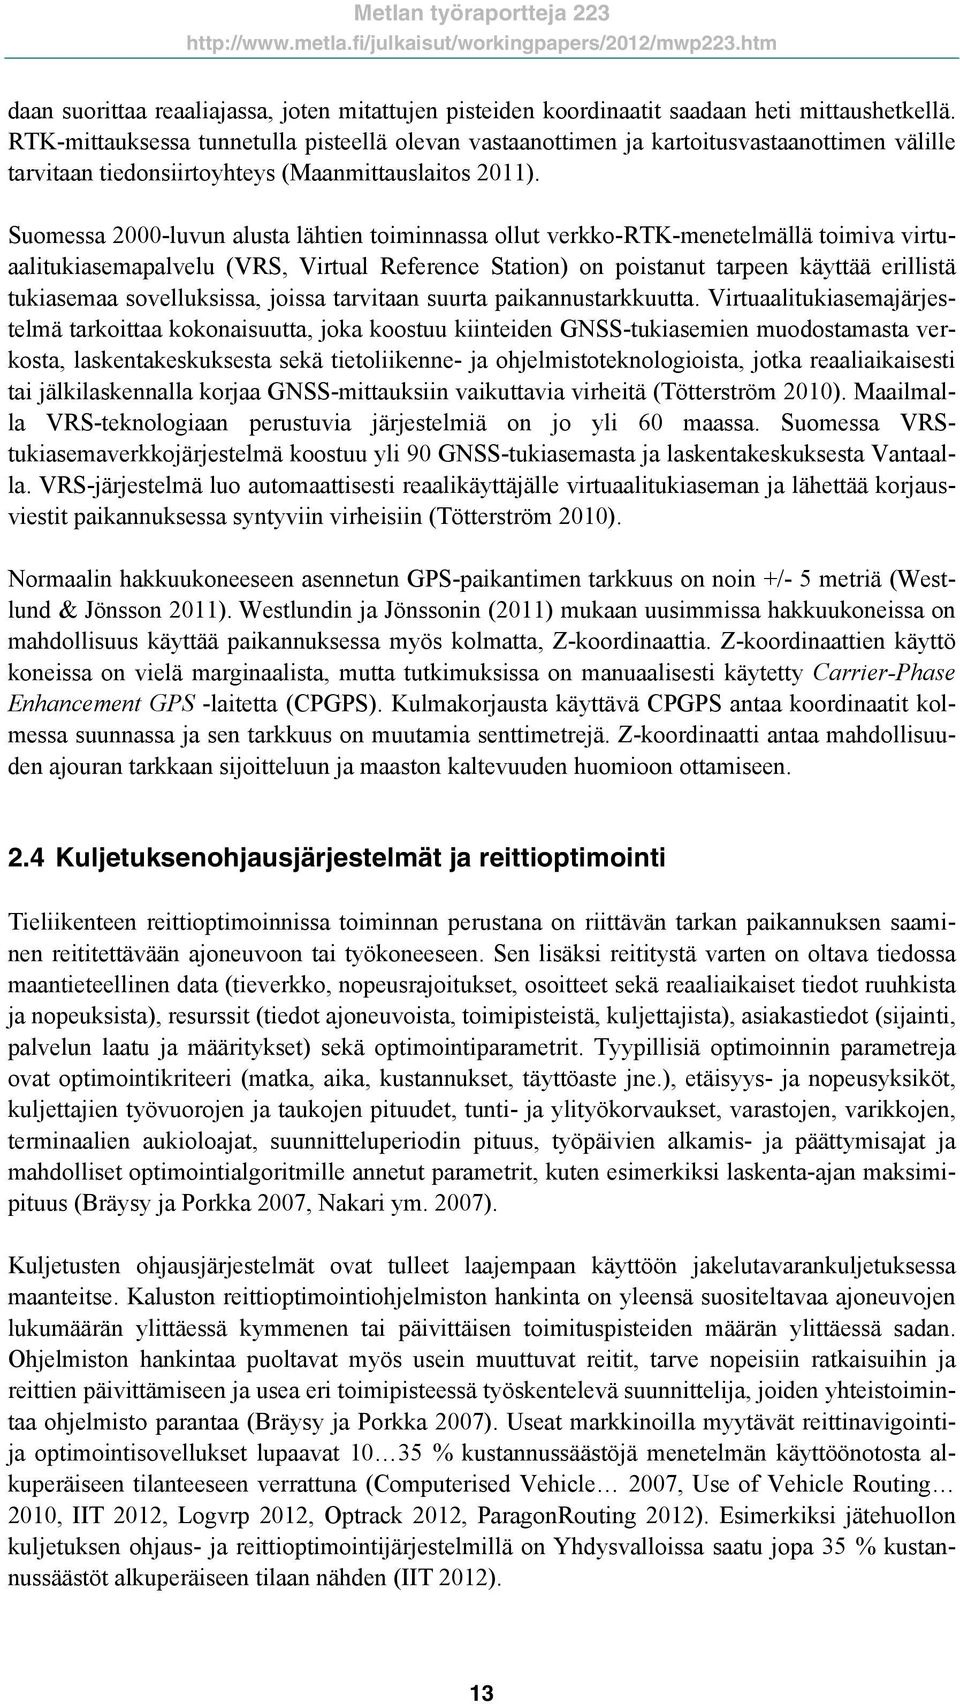 Suomessa 2000-luvun alusta lähtien toiminnassa ollut verkko-rtk-menetelmällä toimiva virtuaalitukiasemapalvelu (VRS, Virtual Reference Station) on poistanut tarpeen käyttää erillistä tukiasemaa